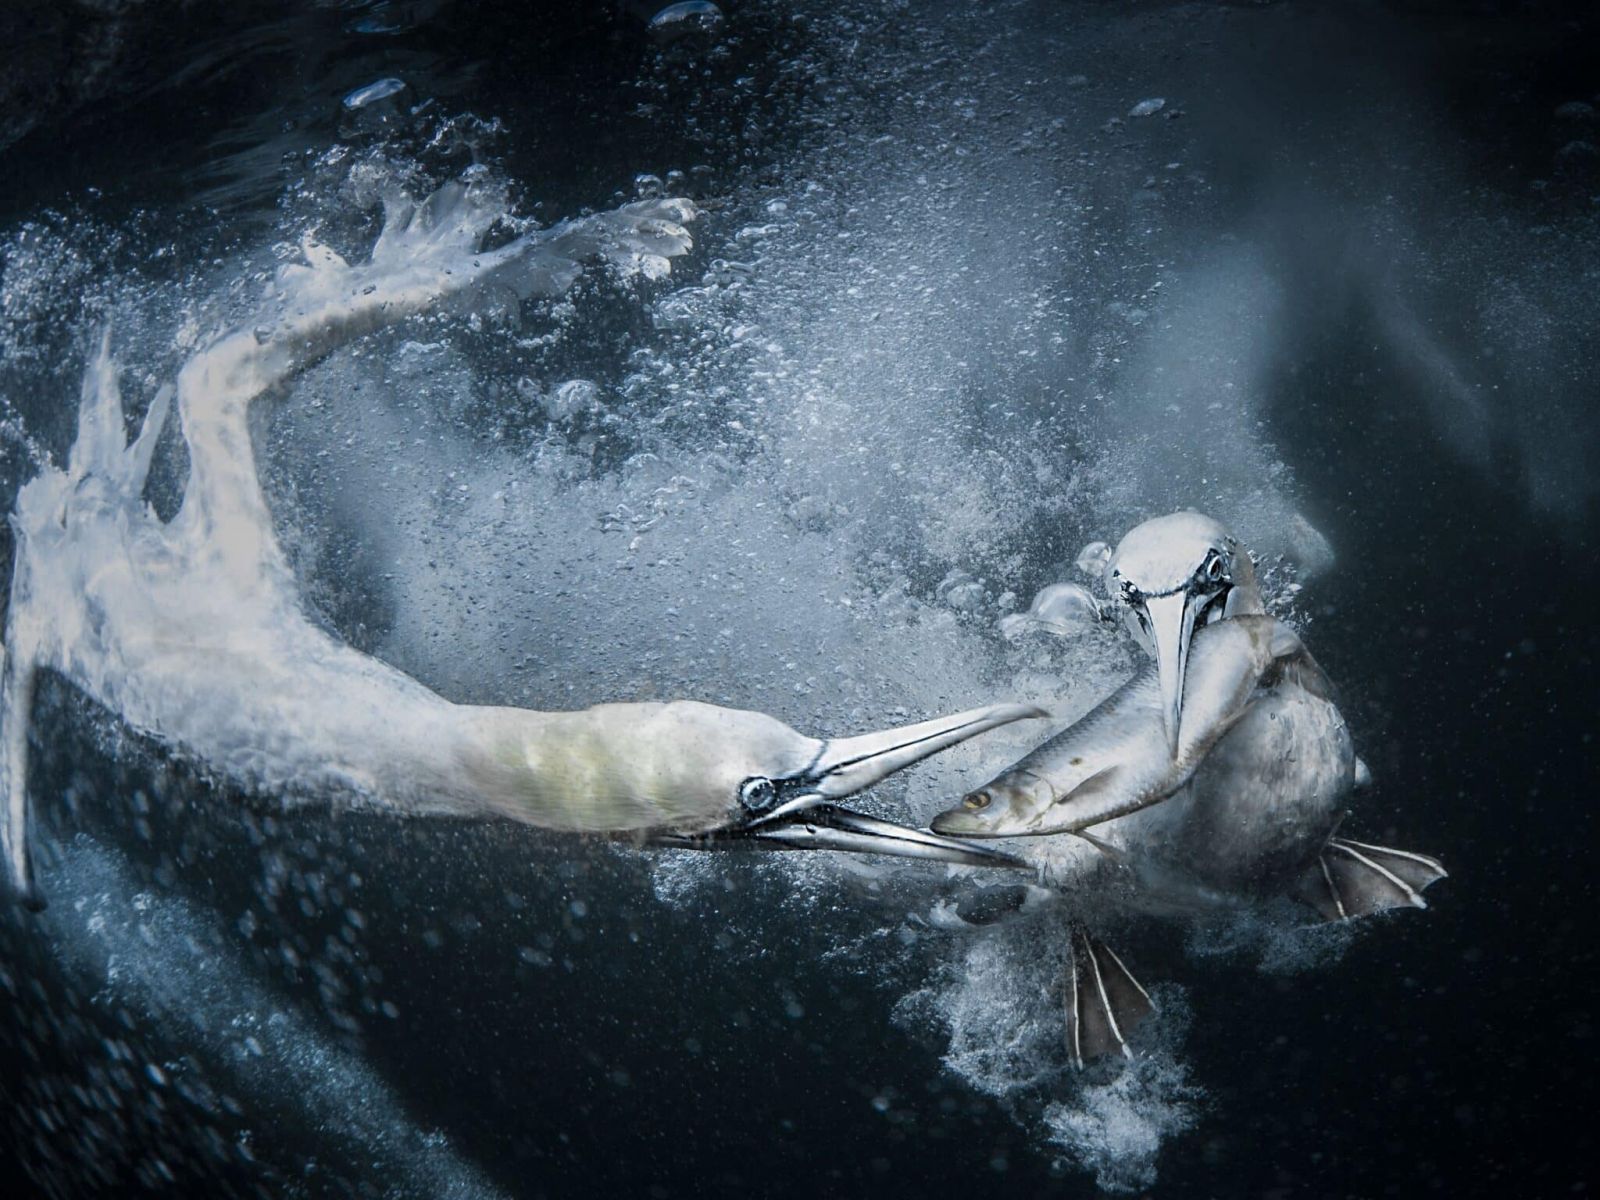 Снимок абсолютного победителя конкурса, олуши под водой. Фото: Tracey Lund.